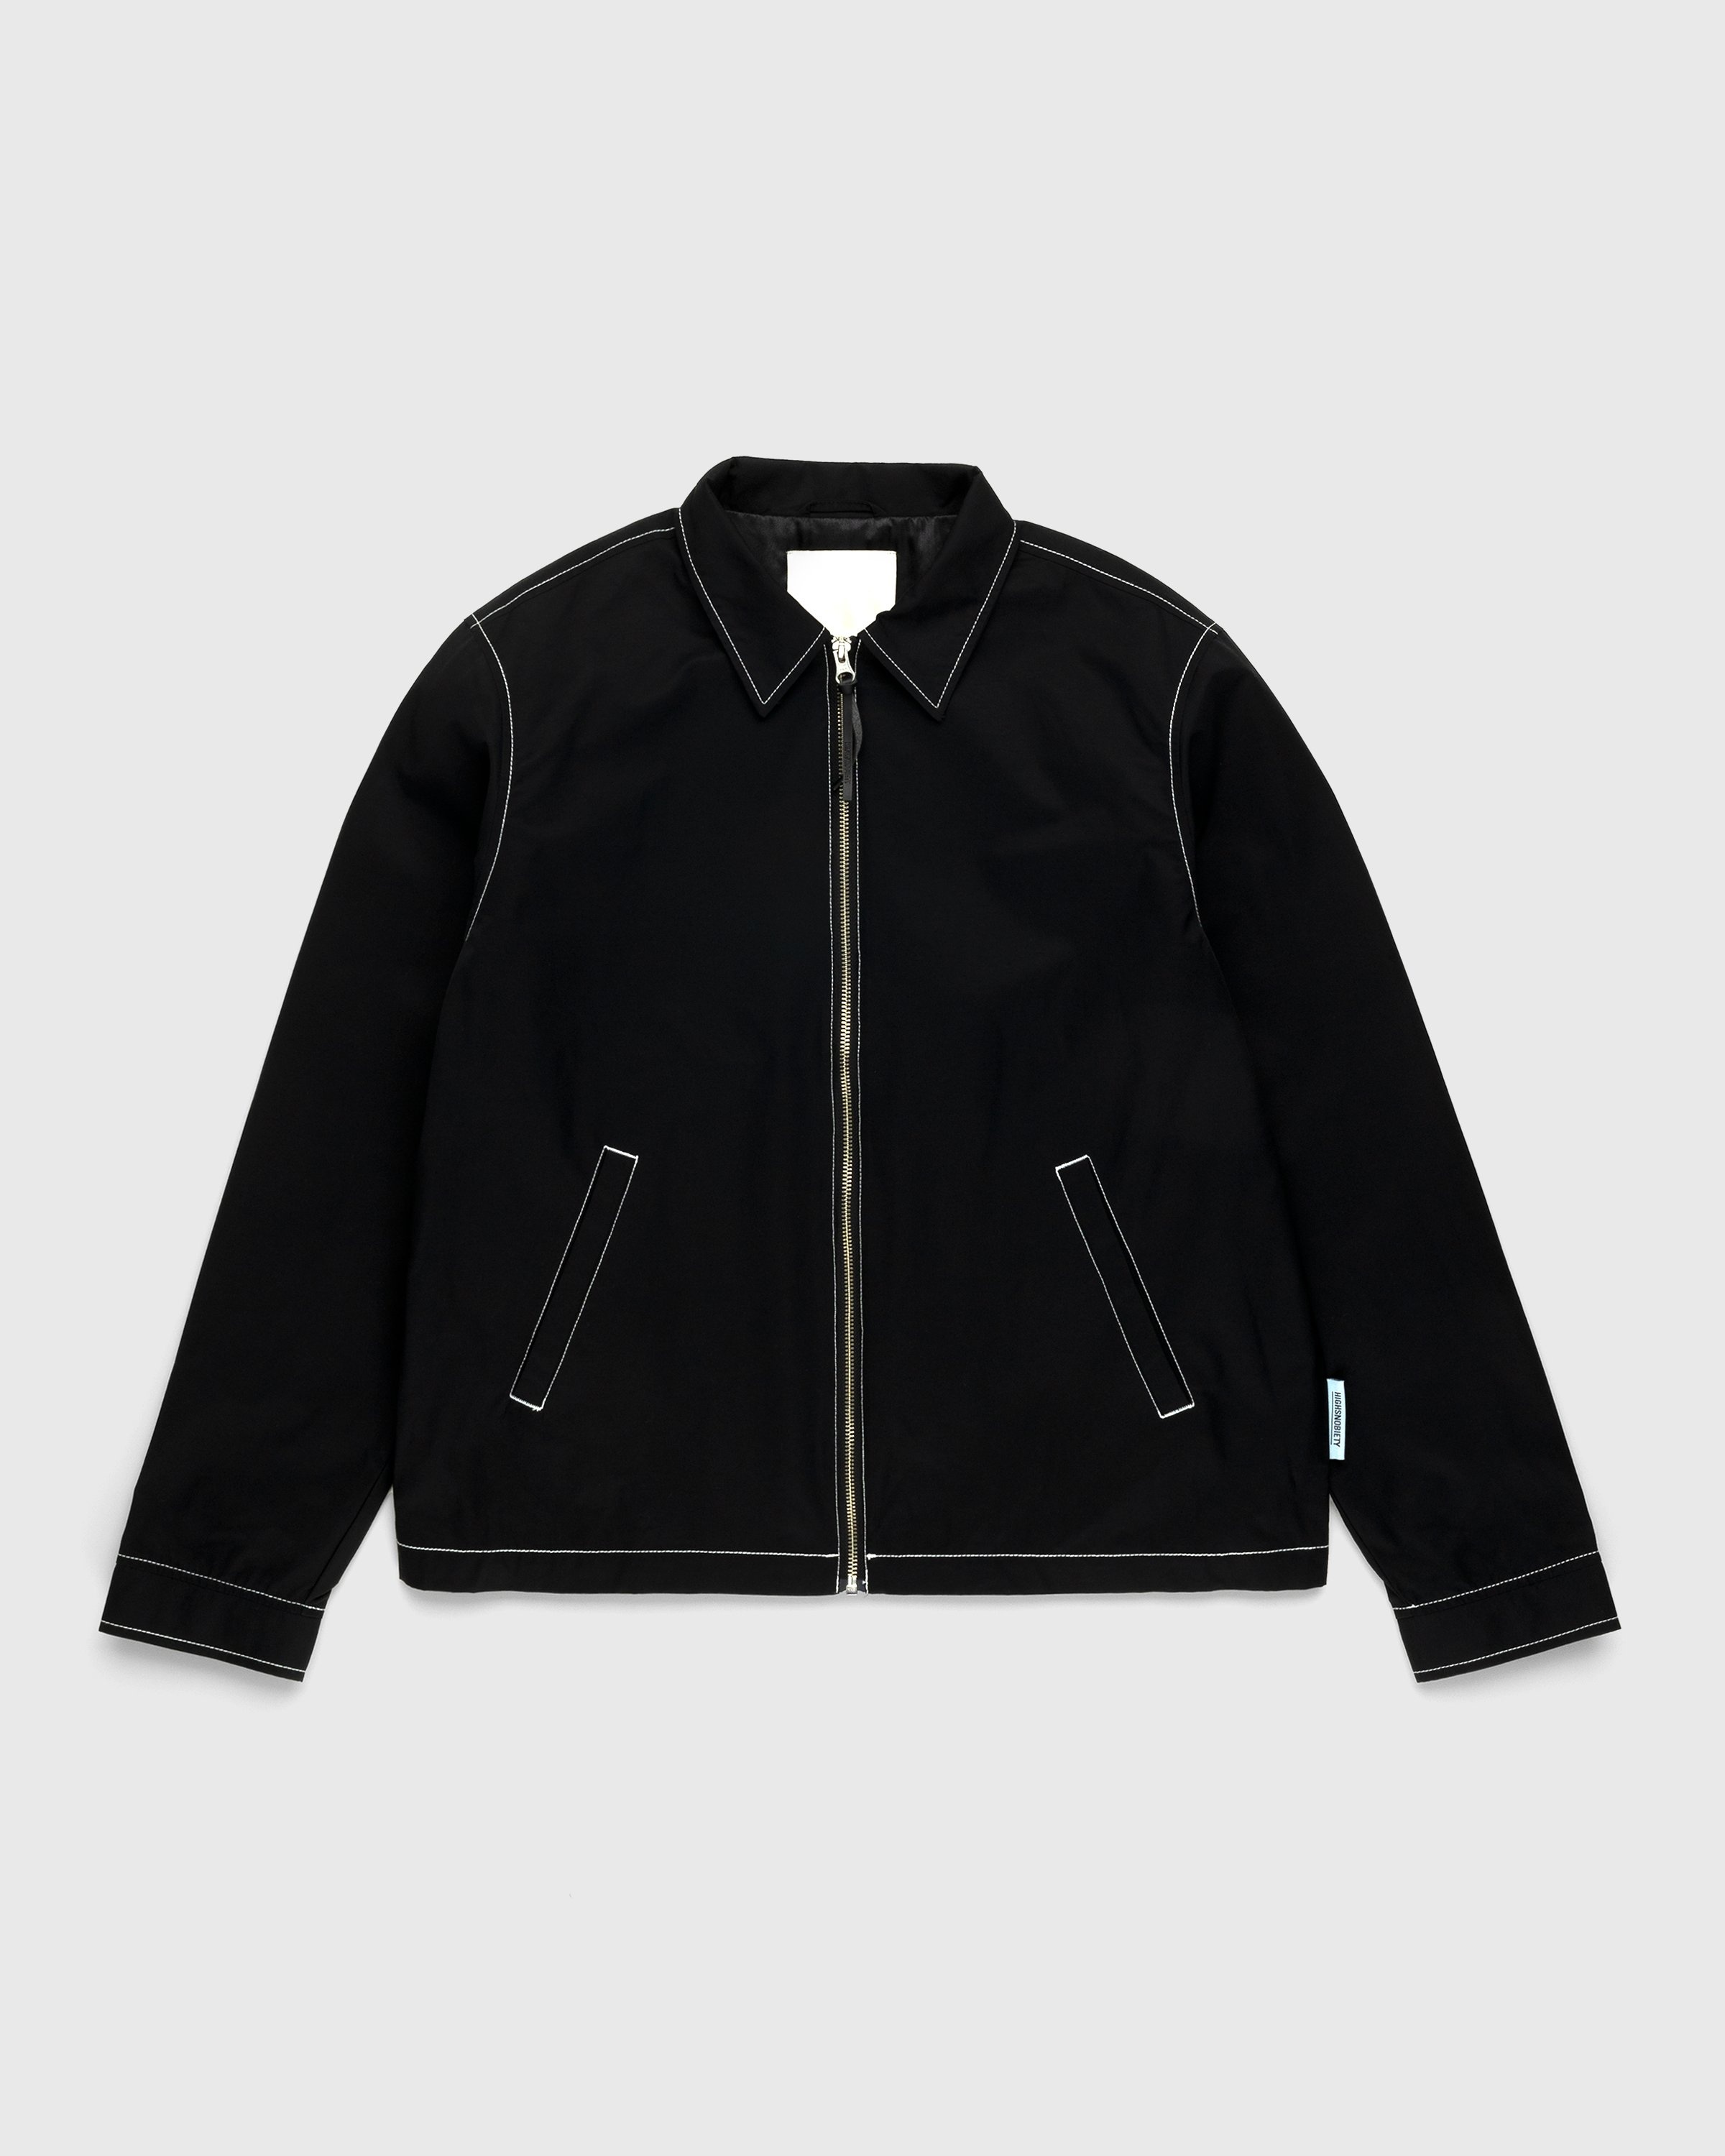 Highsnobiety – Brushed Nylon Jacket Black | Highsnobiety Shop